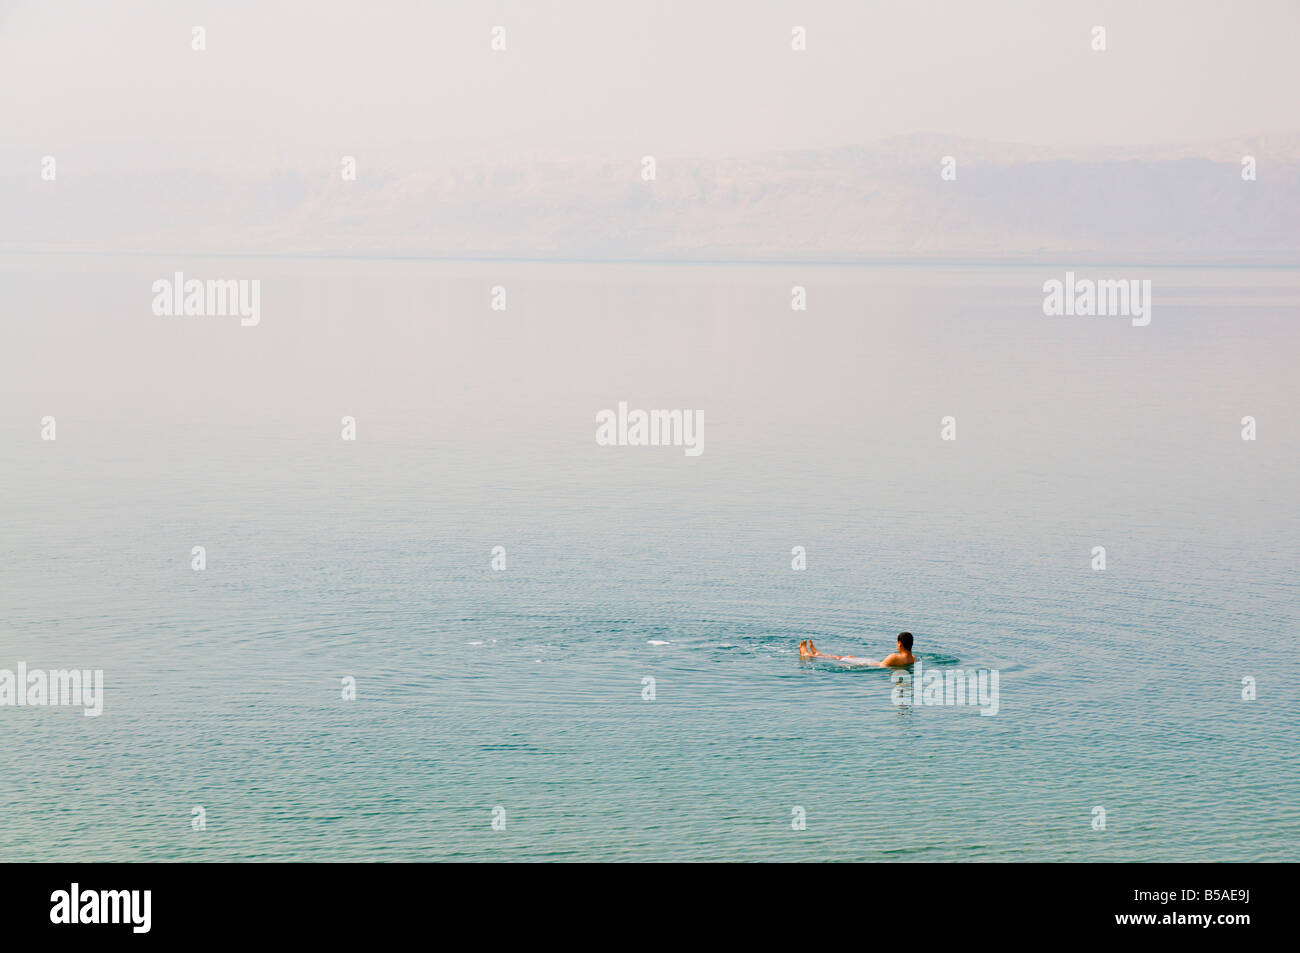 Homme natation dans la mer Morte, Jordanie, Moyen-Orient Banque D'Images